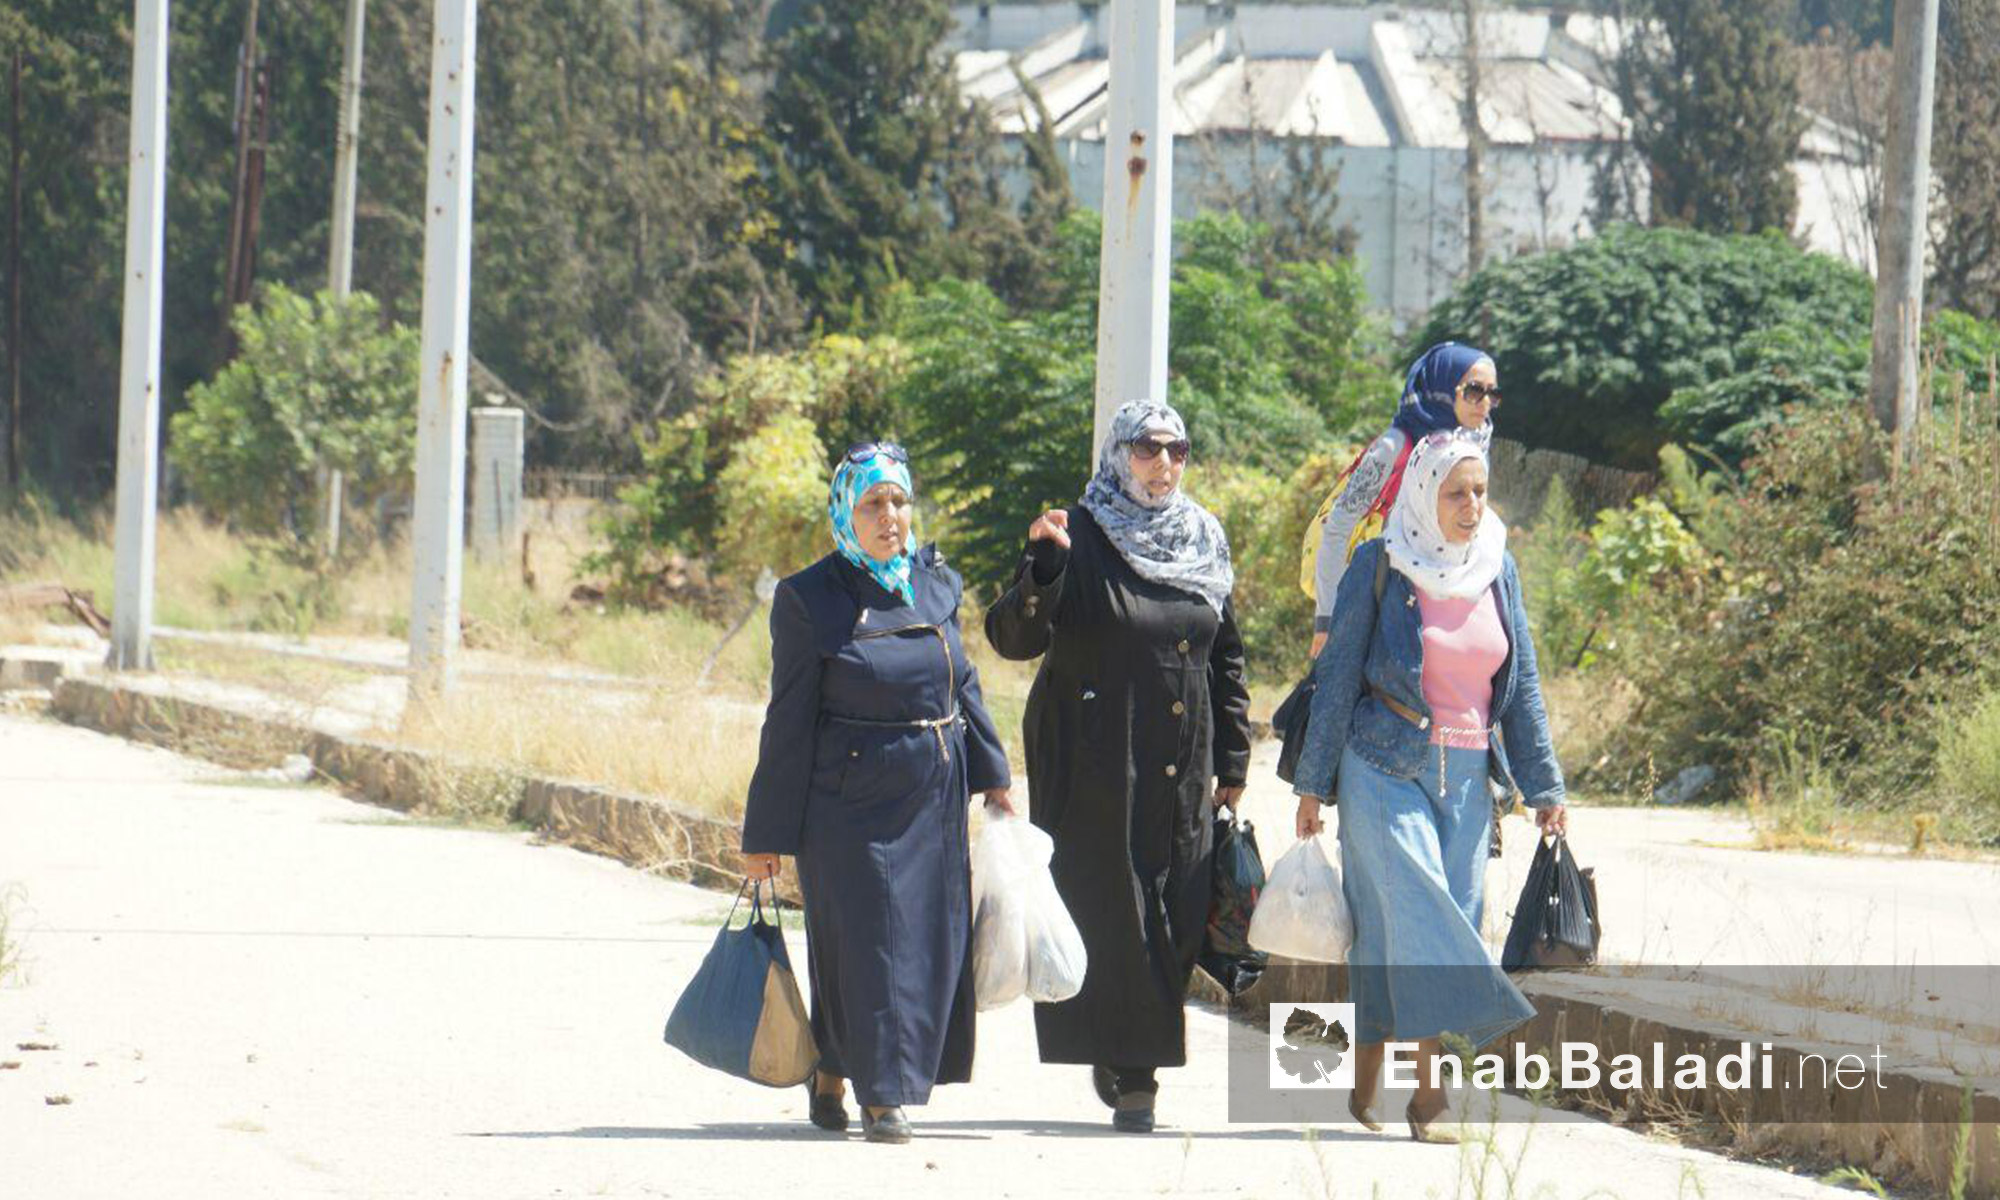 أربع نساء يدخلن حي الوعر بحمص - الثلاثاء 6 أيلول (عنب بلدي)